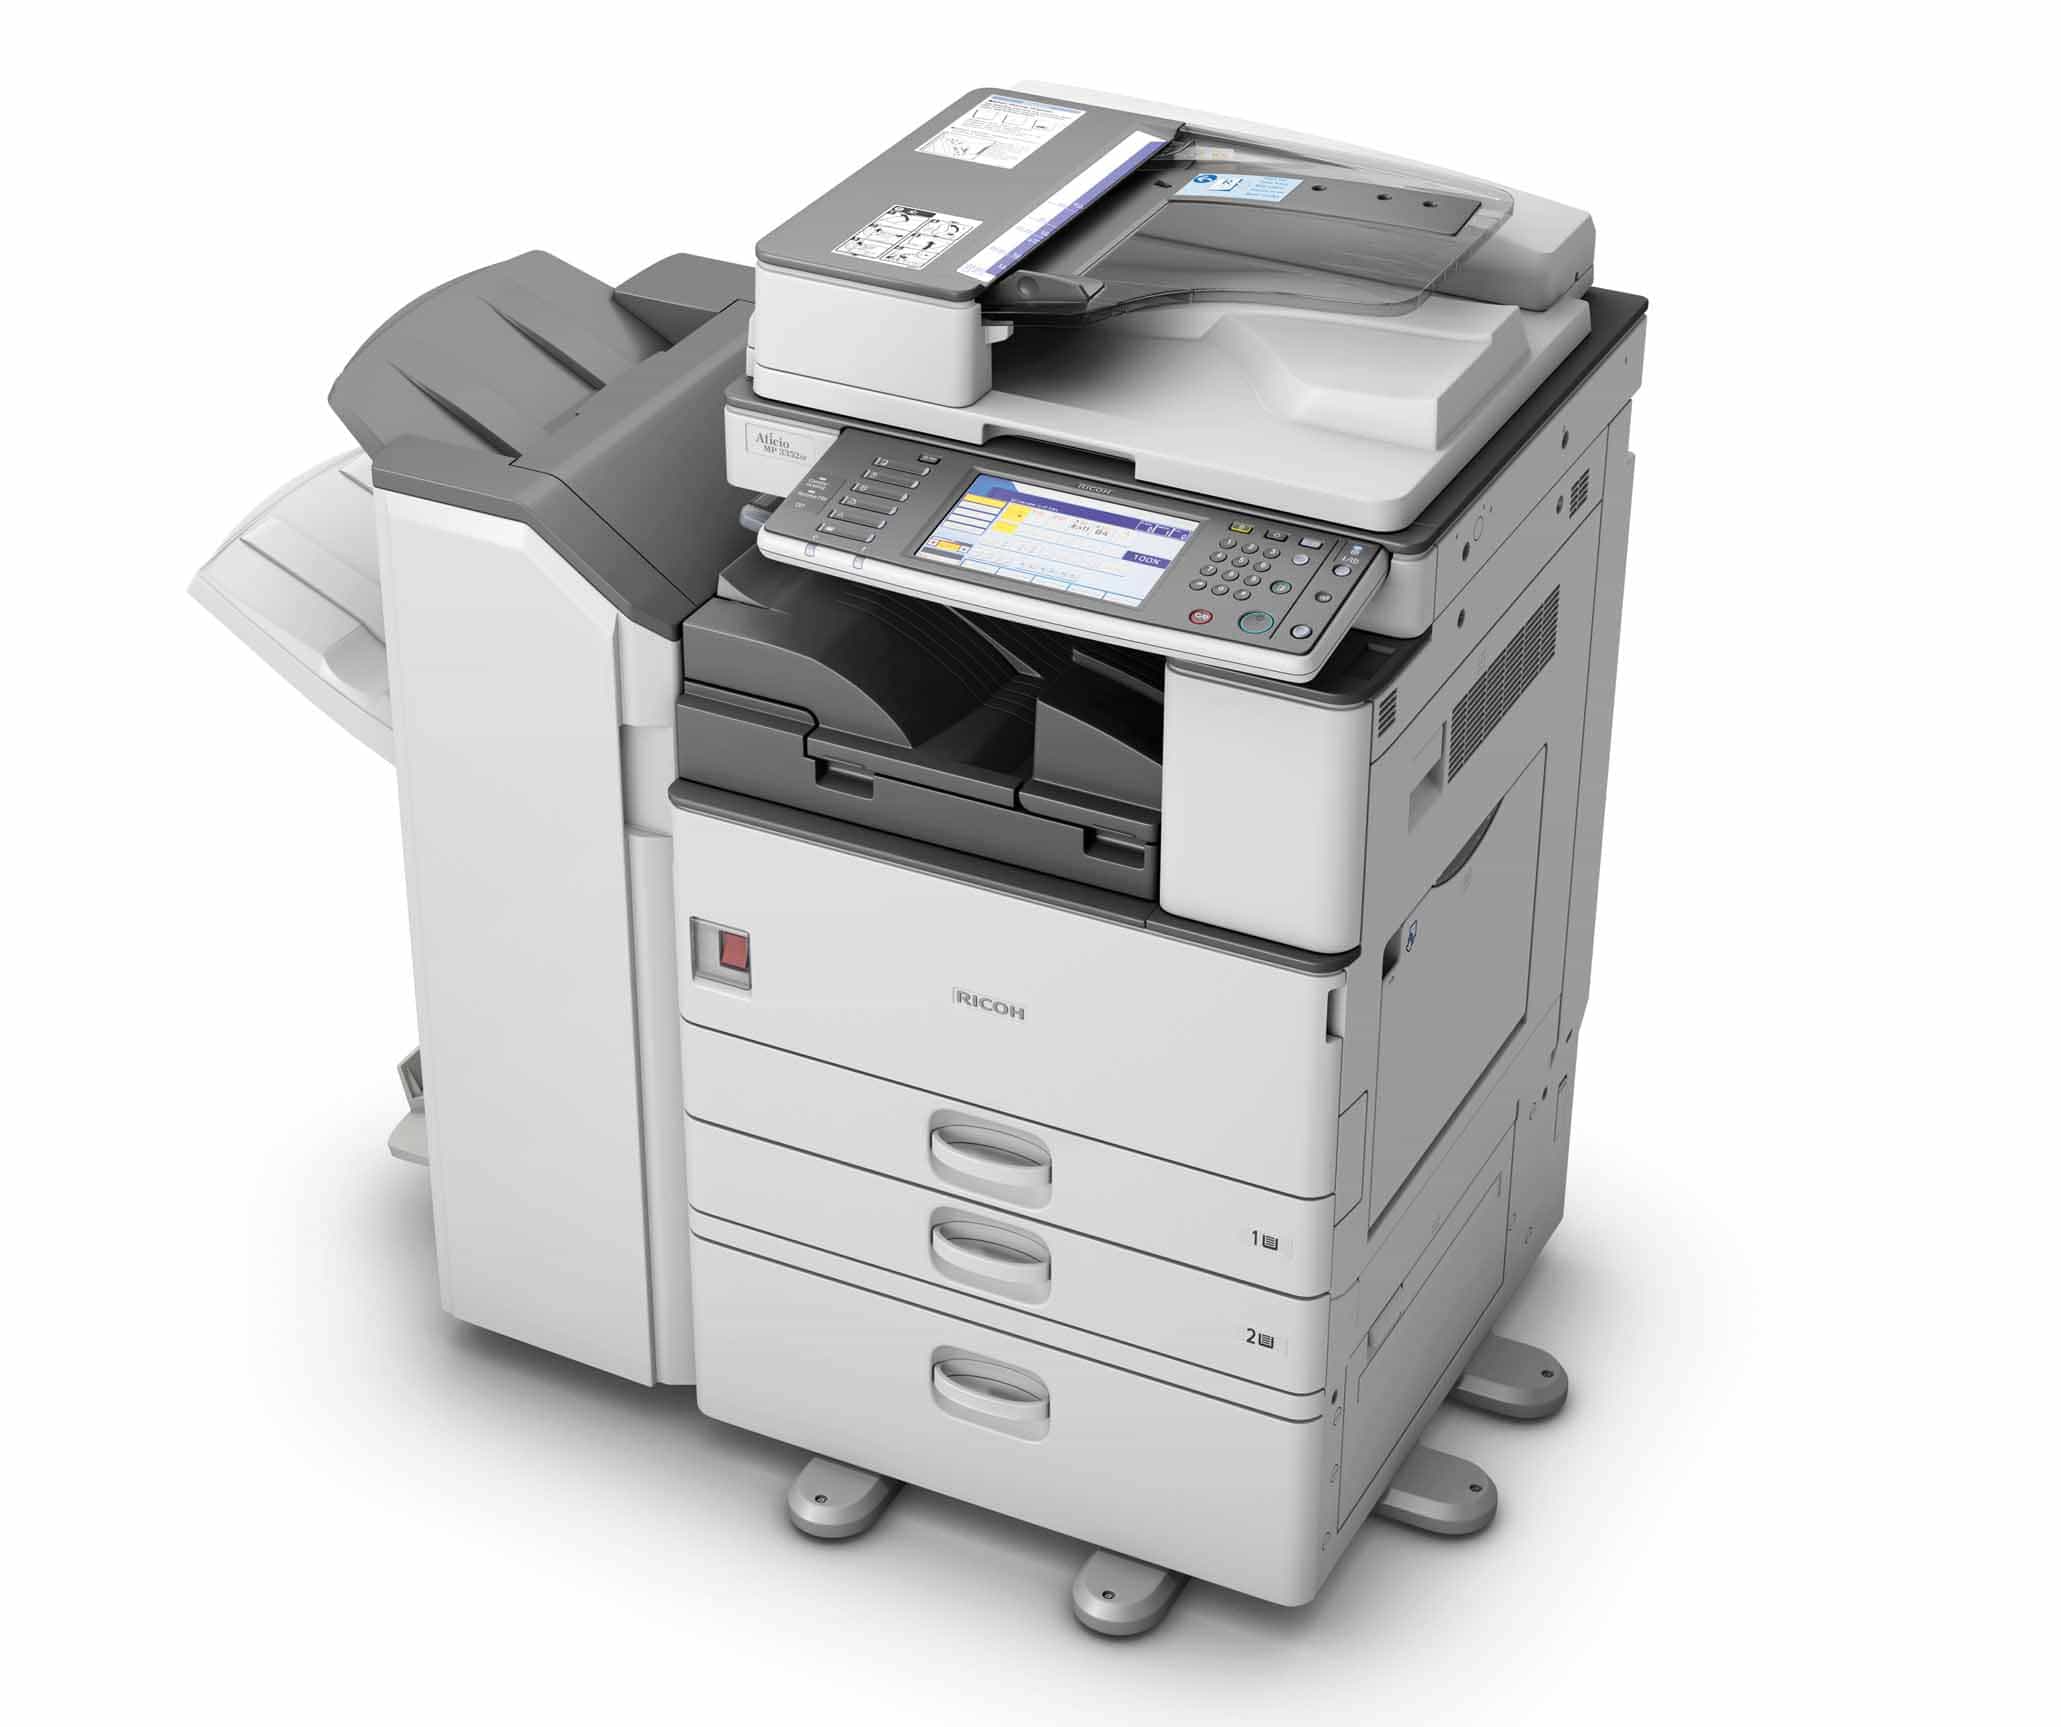 Máy photocopy Ricoh Aficio MP 3352